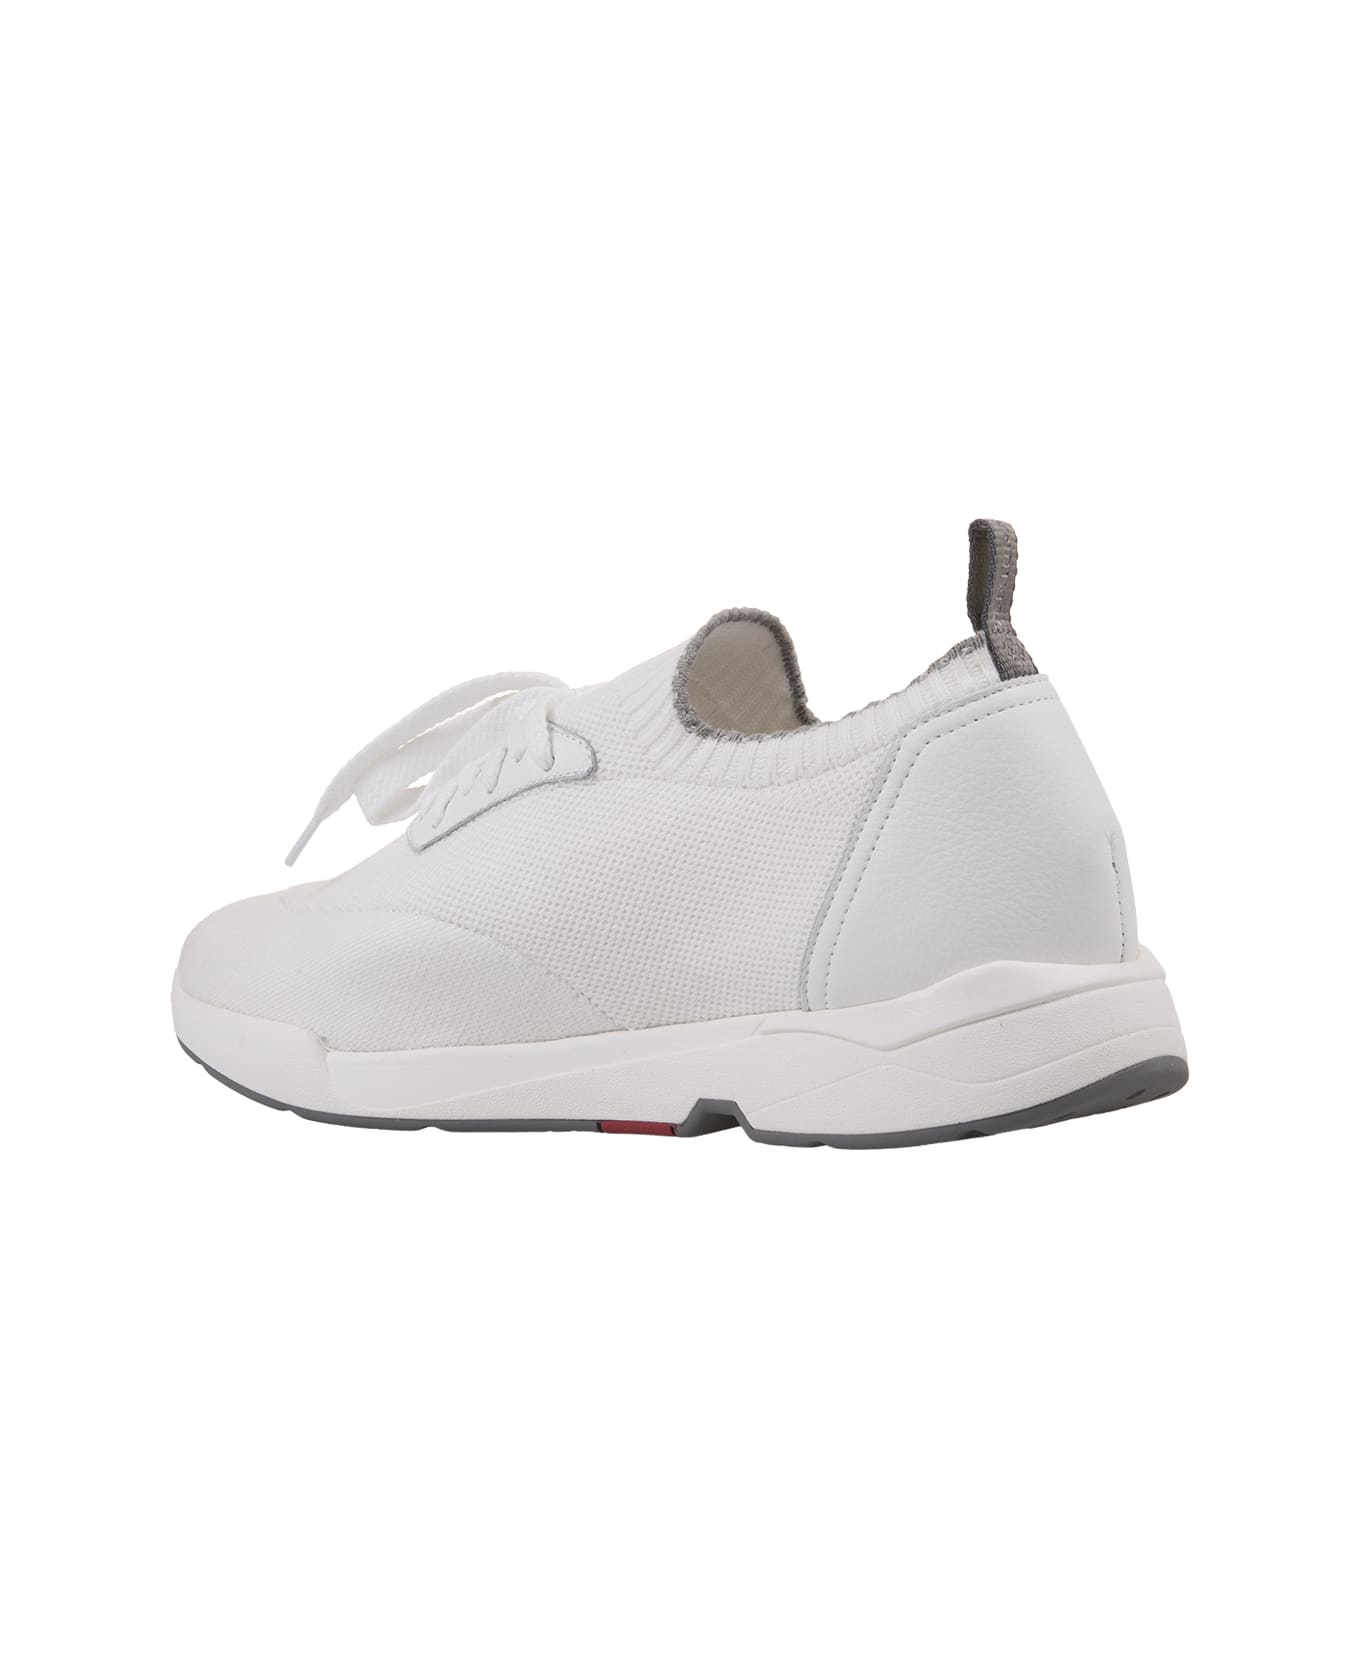 Andrea Ventura W-dragon Sneakers In White Fashion Fabric - White